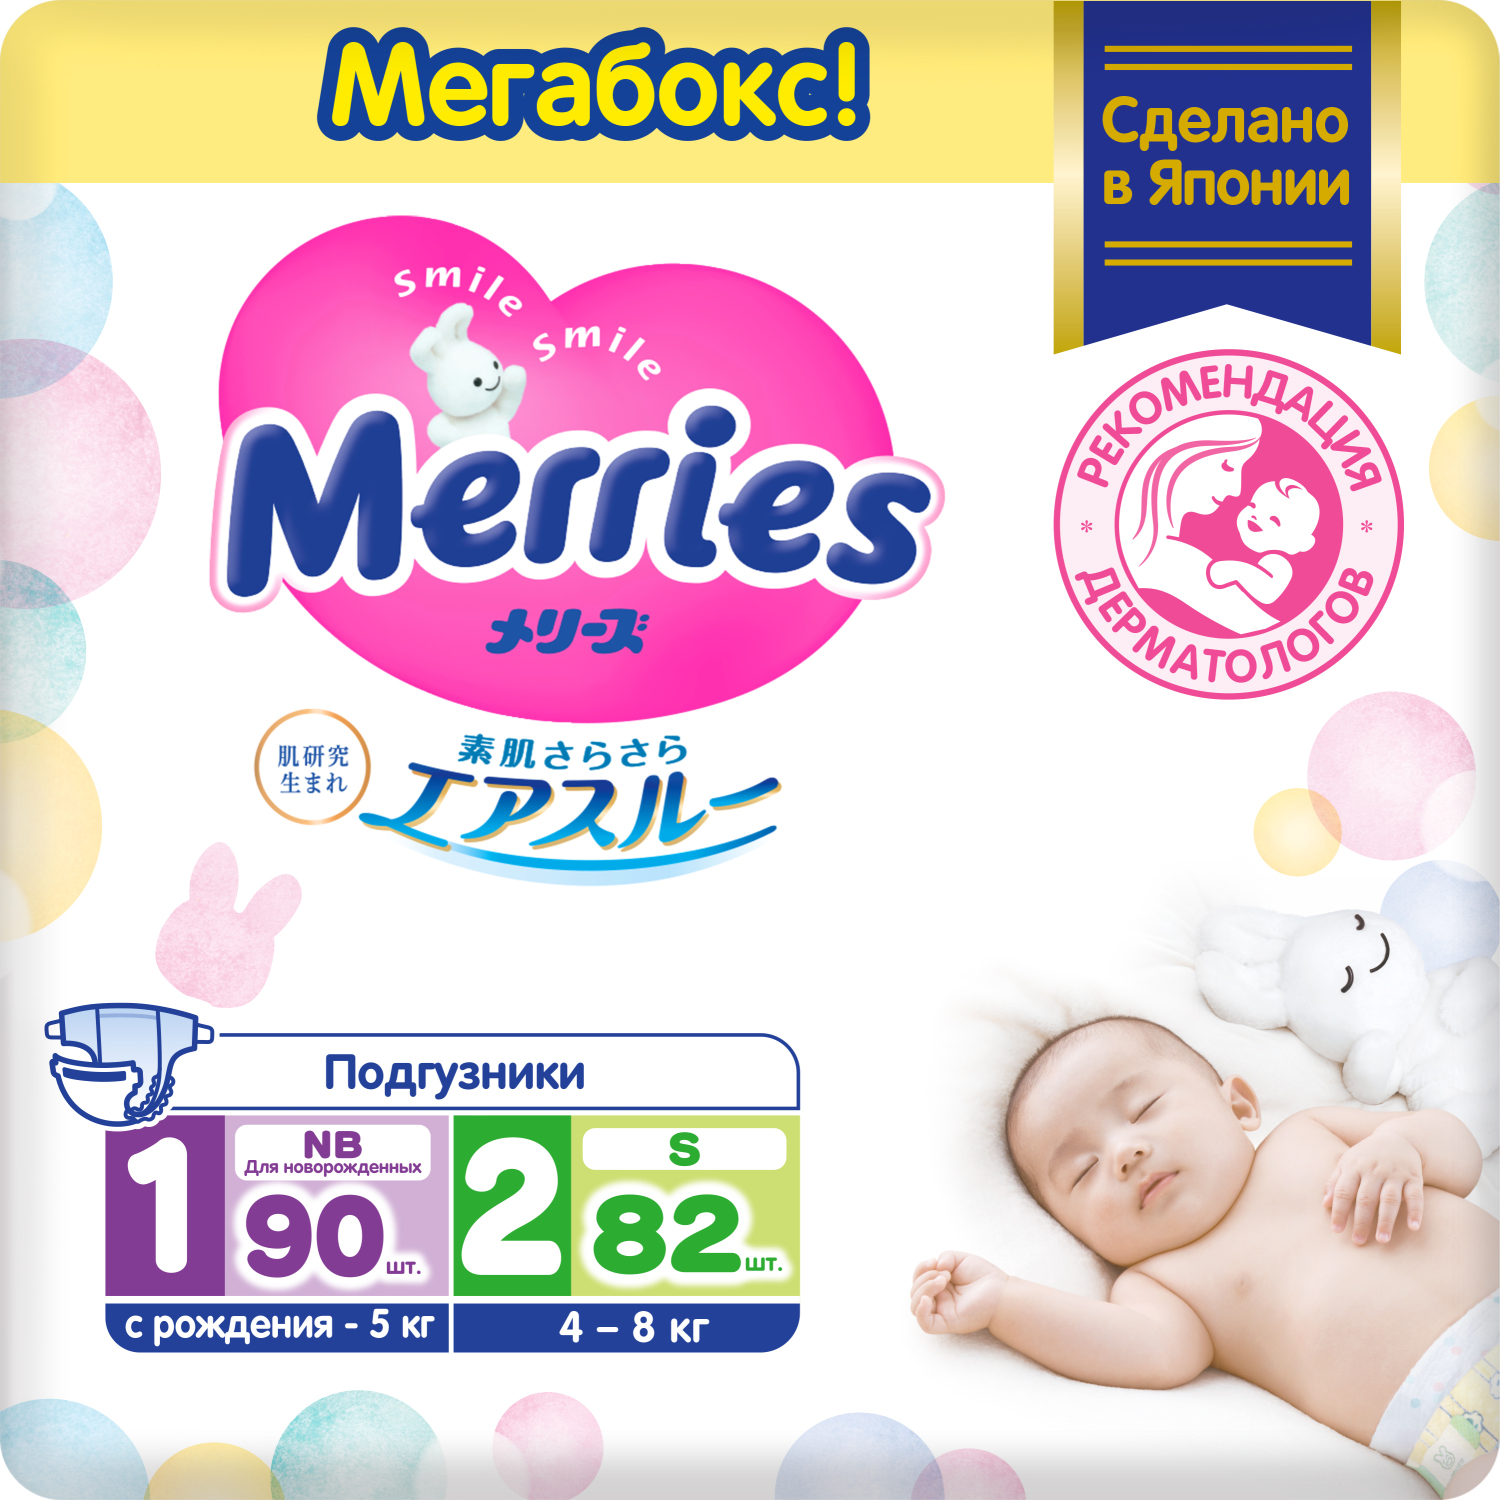 Набор подгузников для новорожденных Merries NB (до 5 кг), 90 шт. + S (4-8 кг) 82 шт.